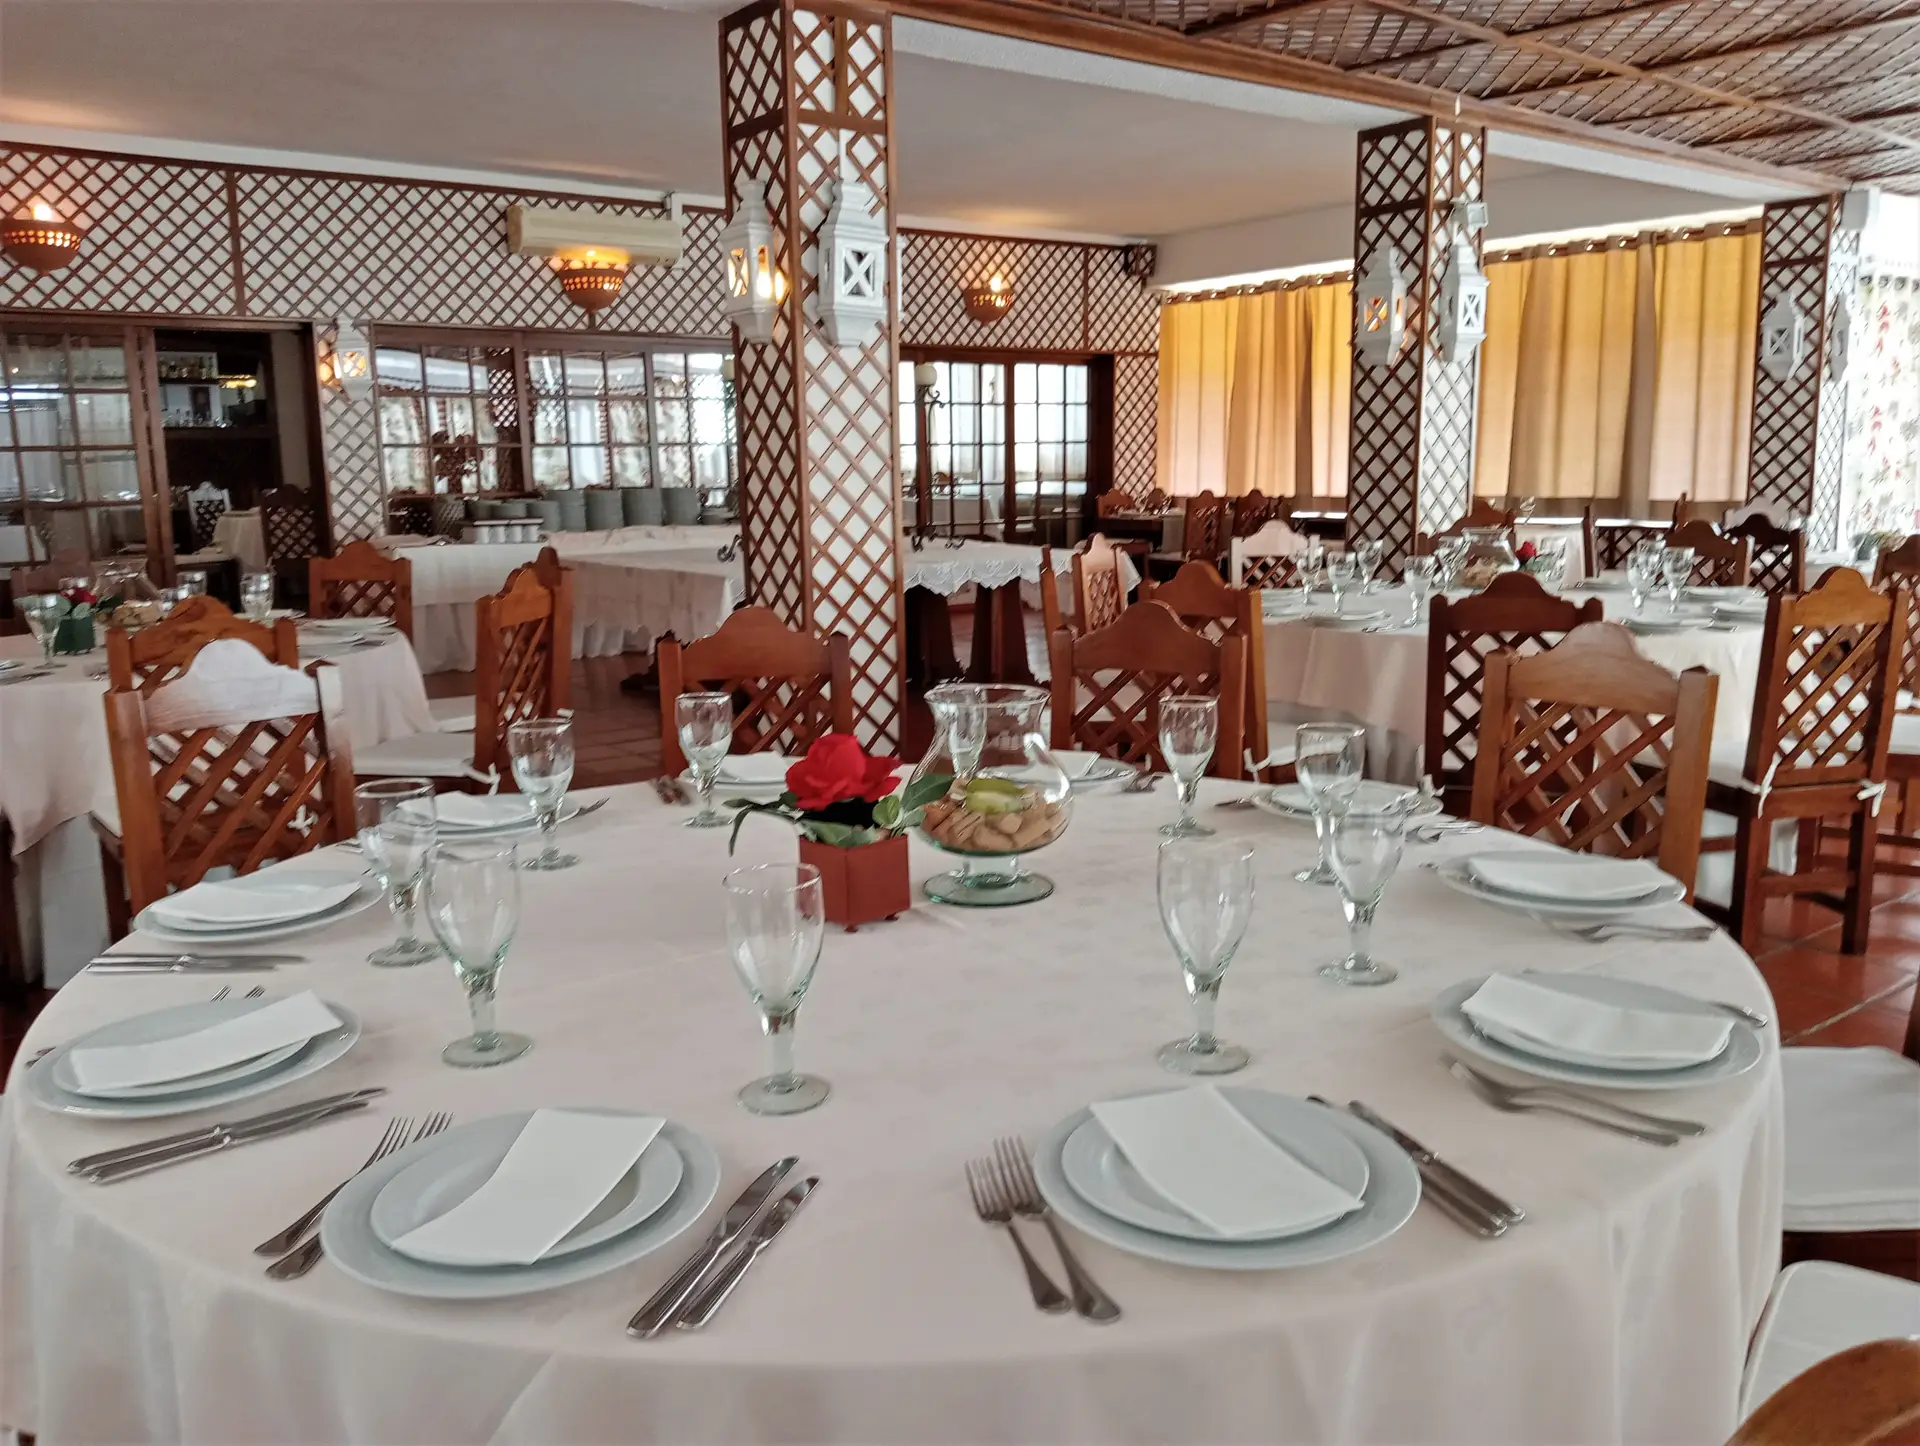 O restaurante foi fundado em 1986 por Júlia, Ilda e Francisco Vinagre